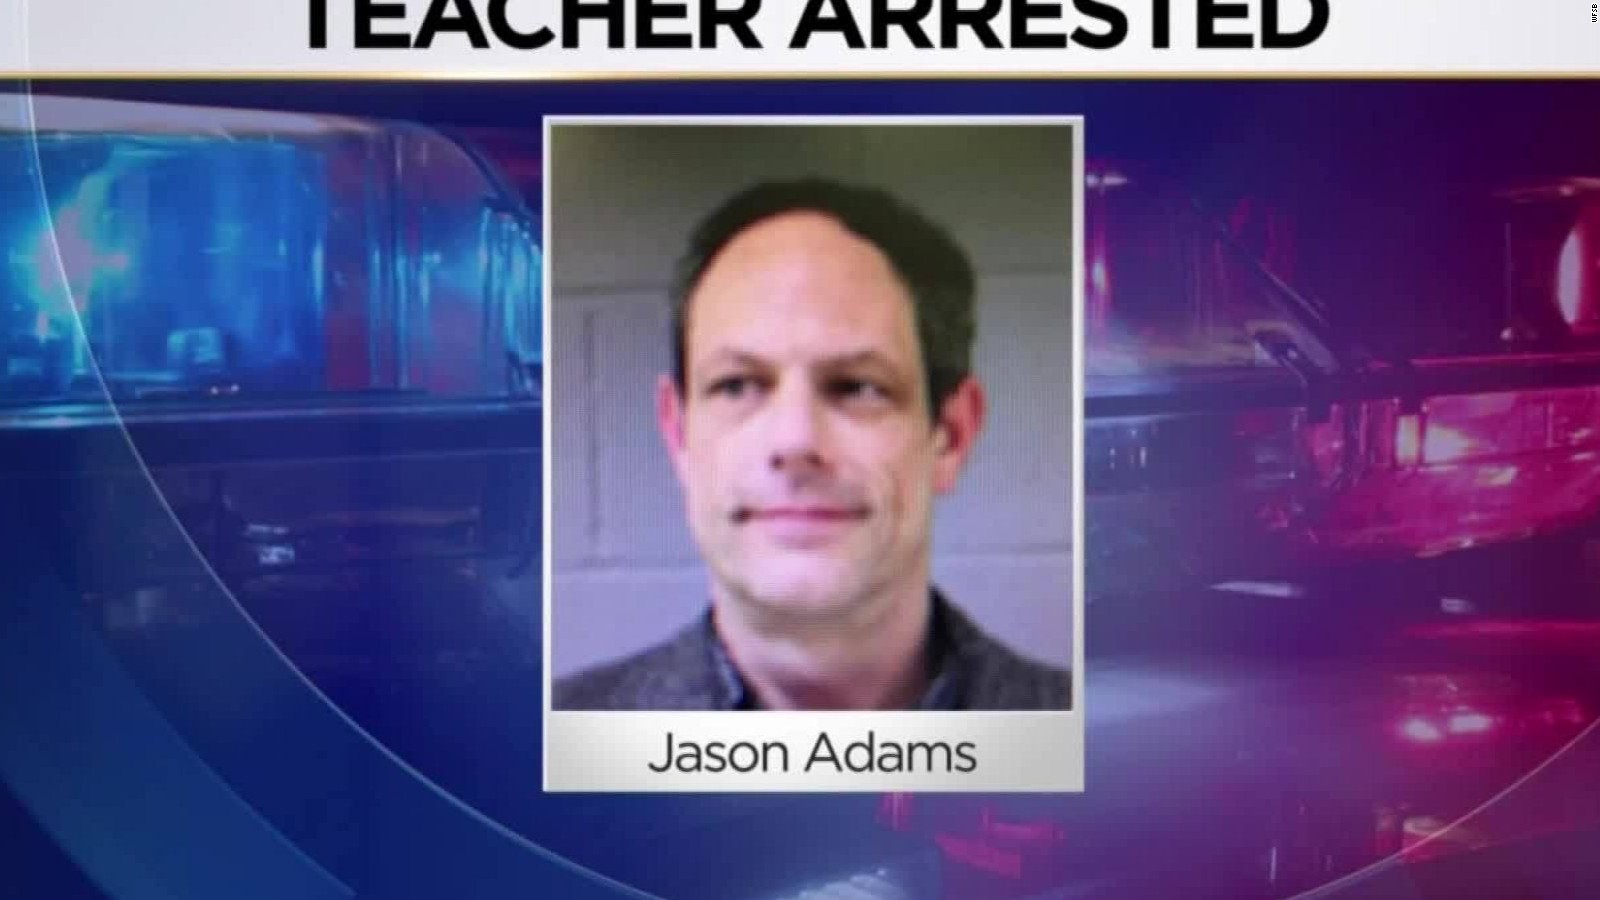 Teacher Arrested After Viral Video Cnn Video 5092